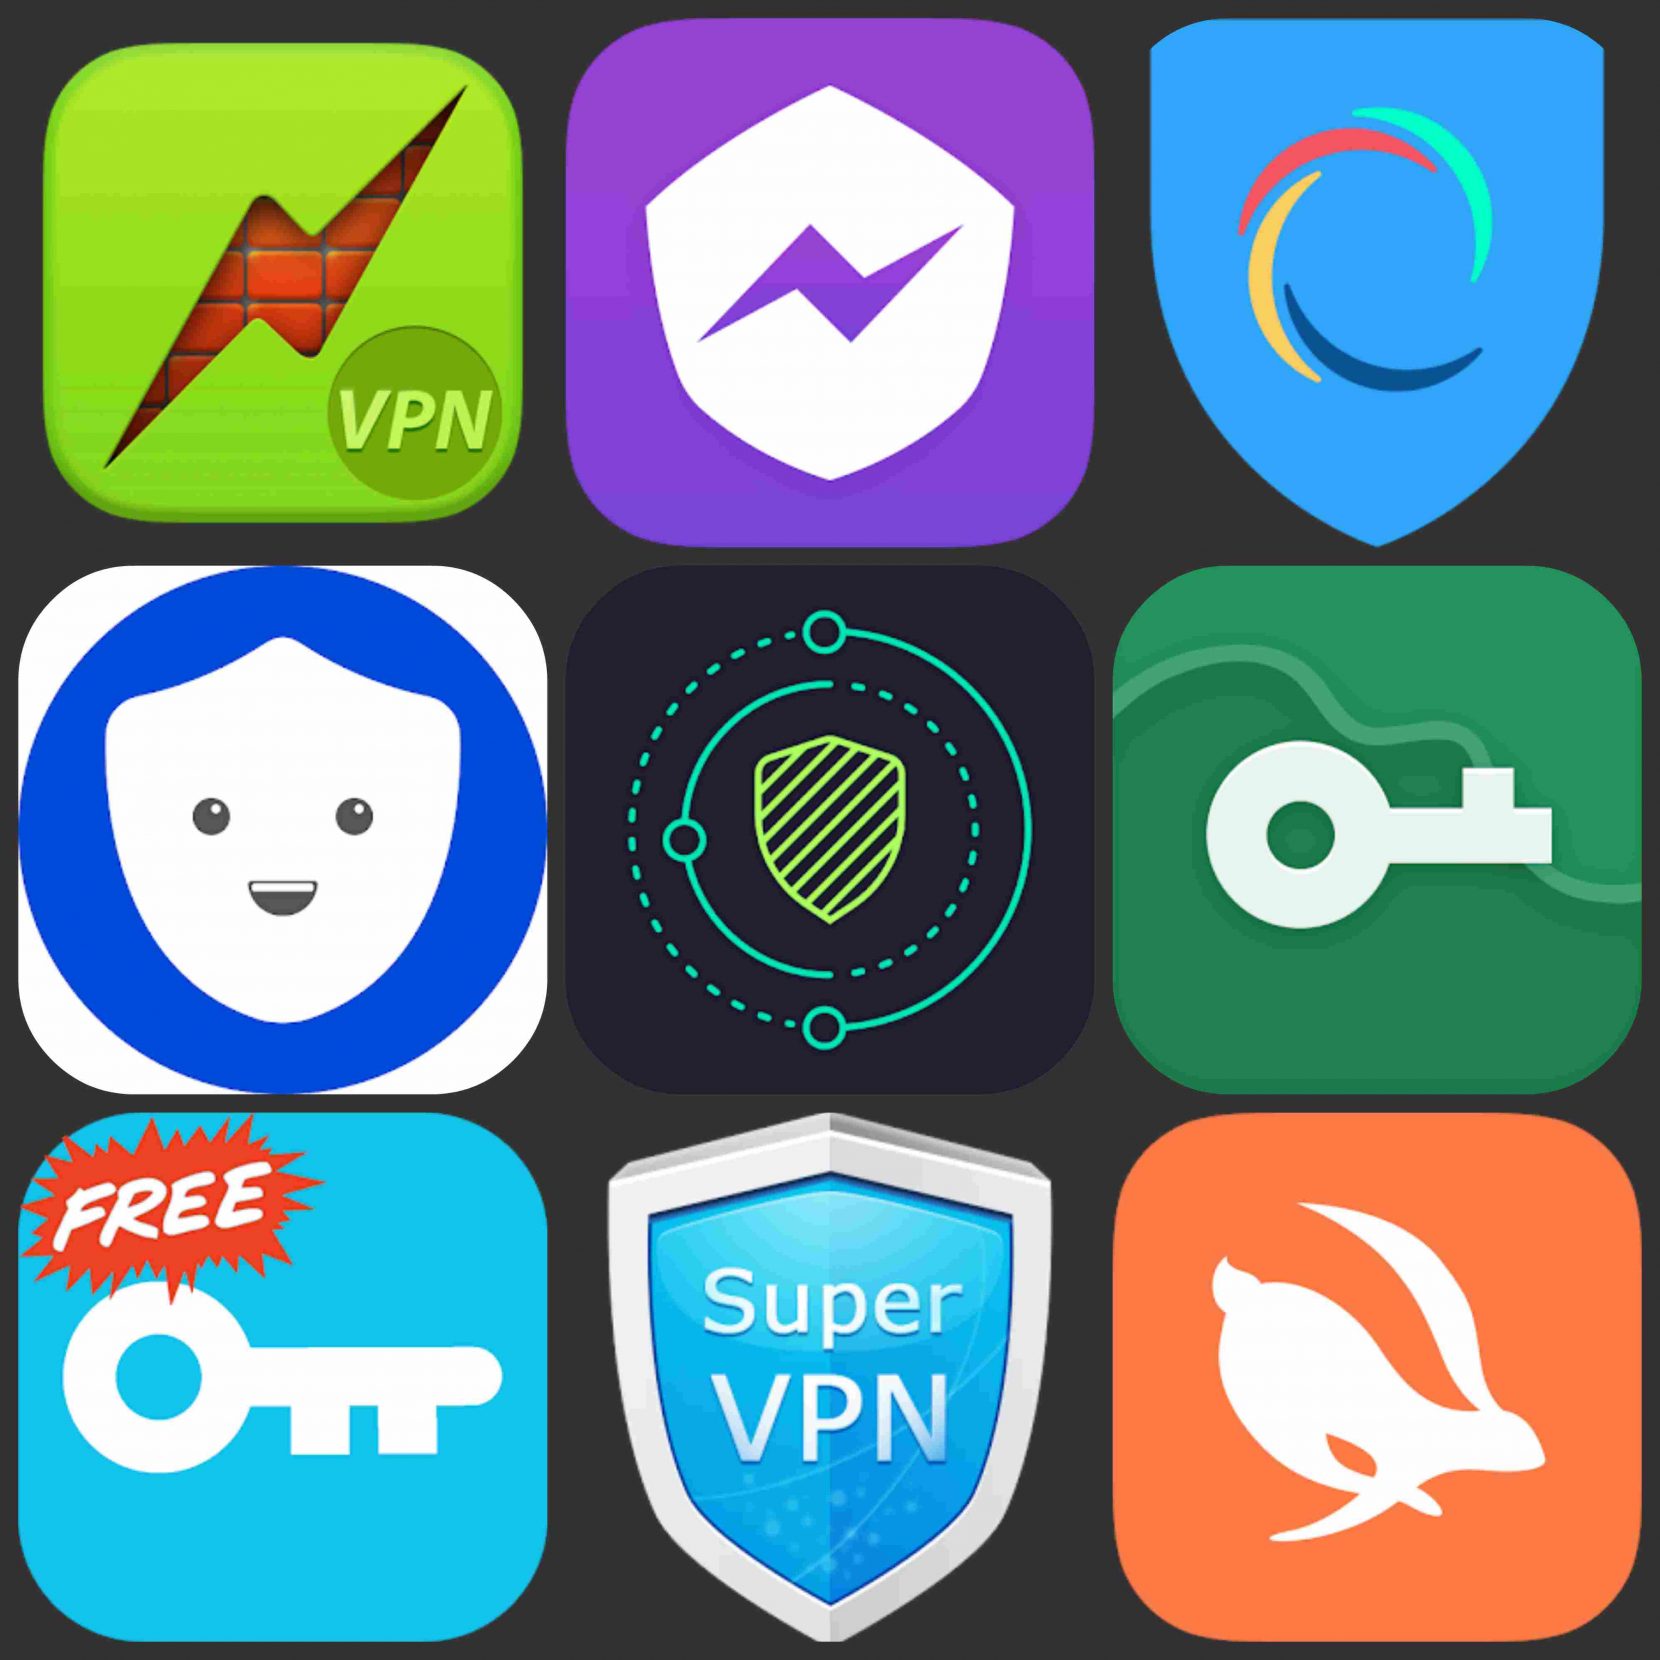 Free VPN Apps